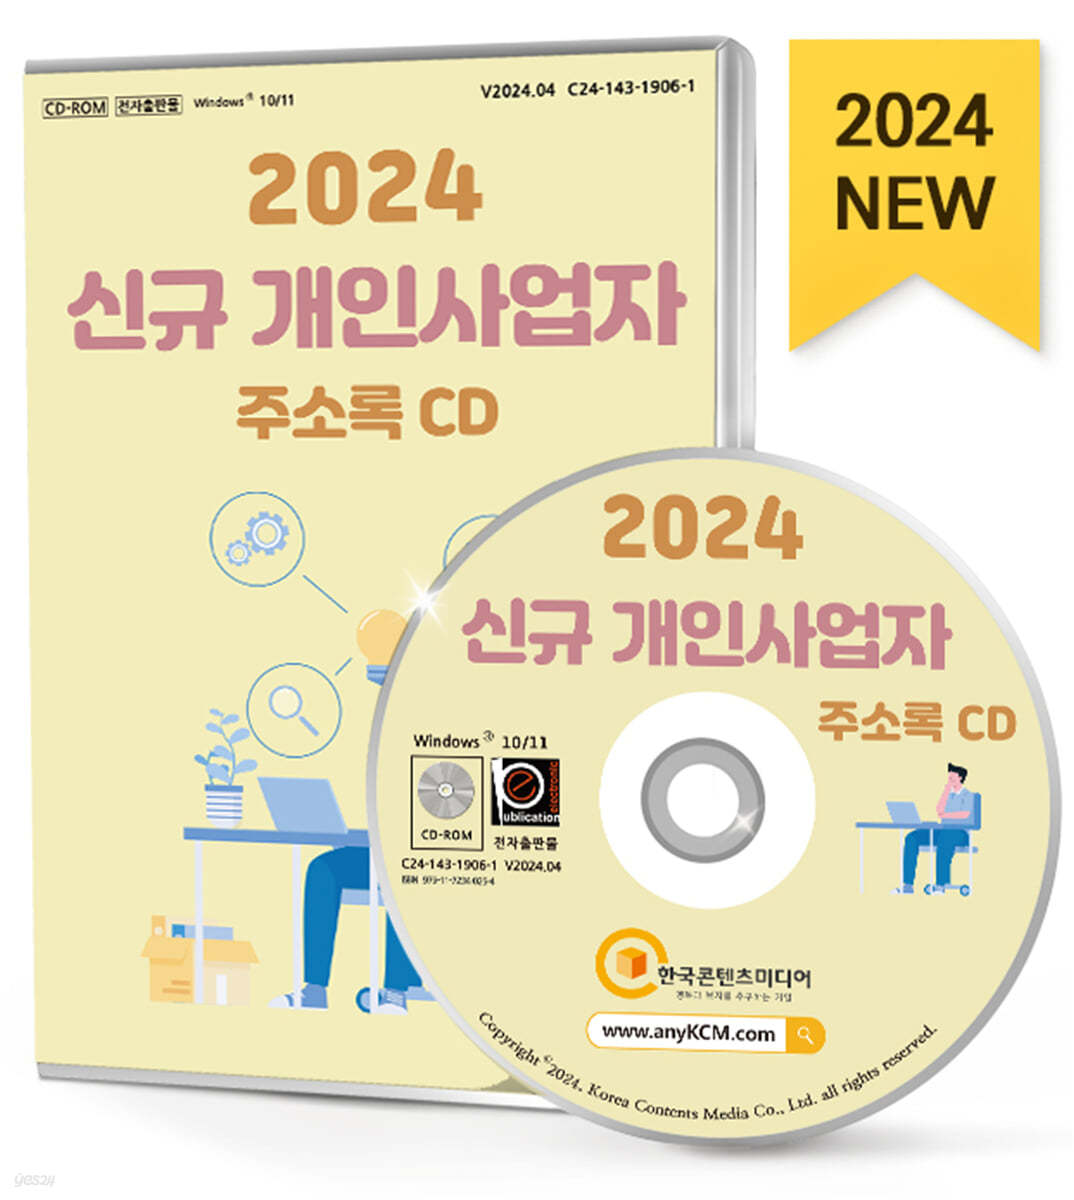 2024 신규 개인사업자 주소록 CD 